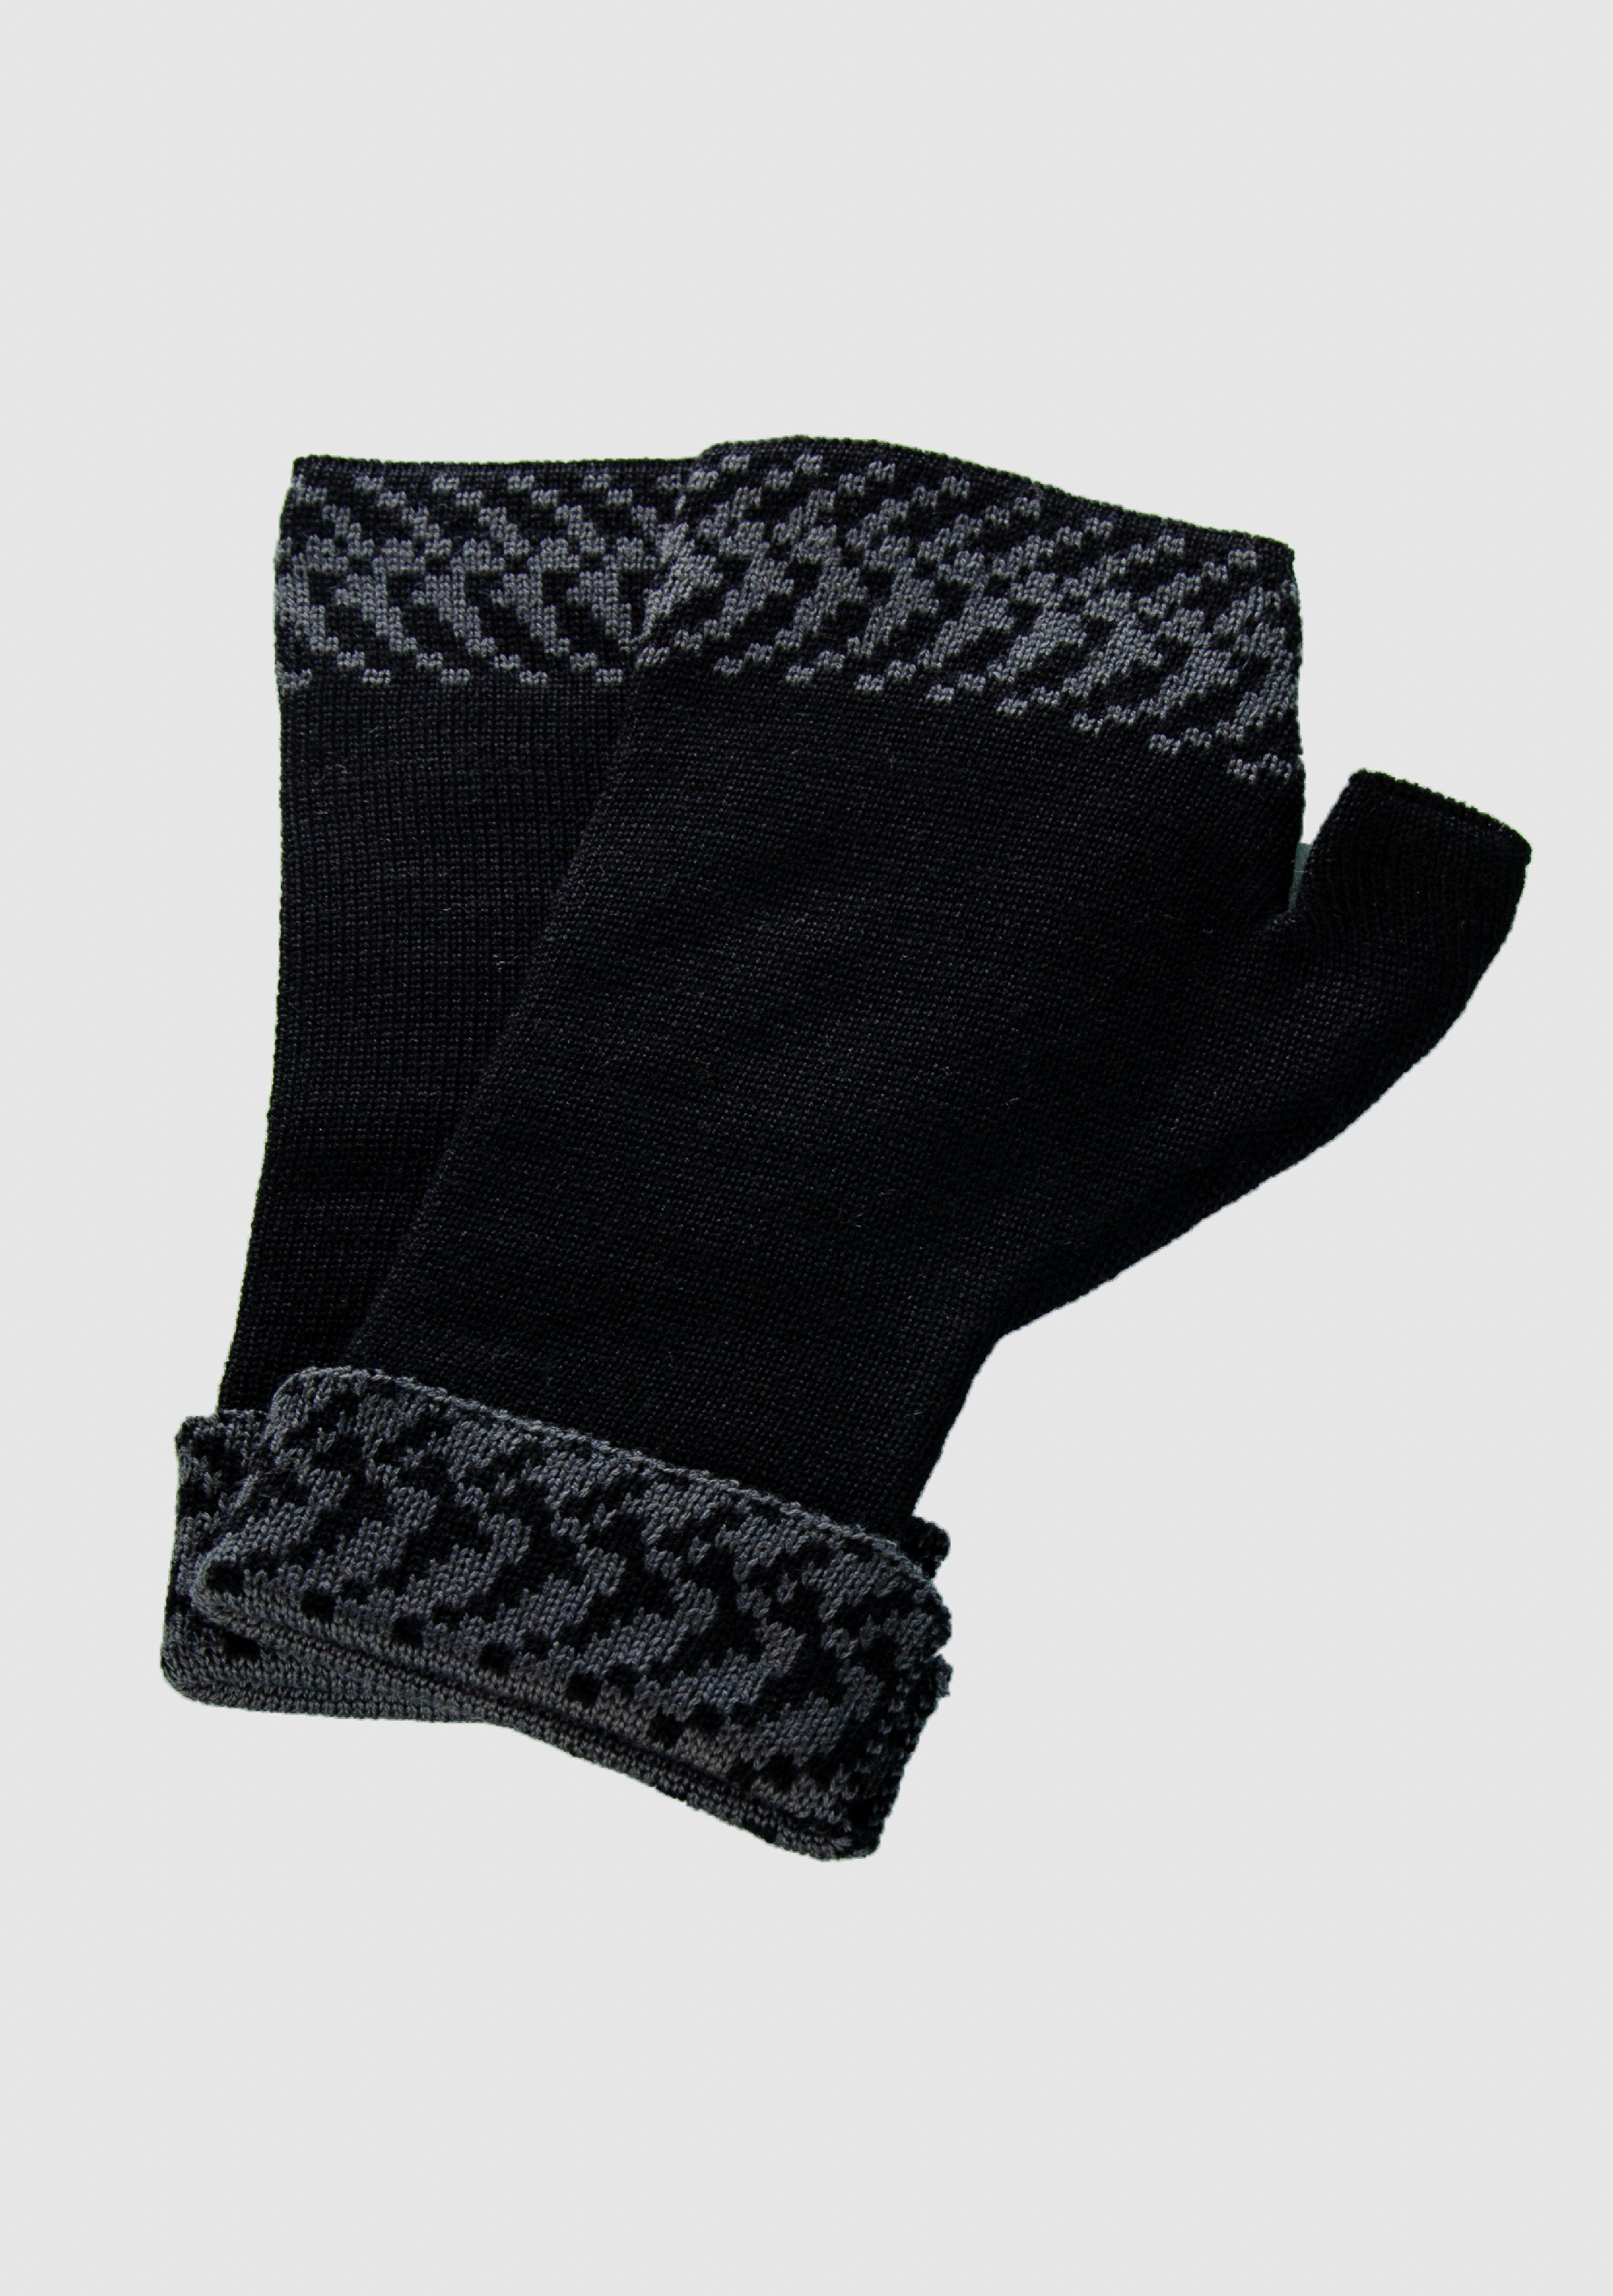 Pixel Handwärmer Strickhandschuhe vielen slow in 100% Merino Farben extrasoft aus Merino fashion schwarz_graphit LANARTO